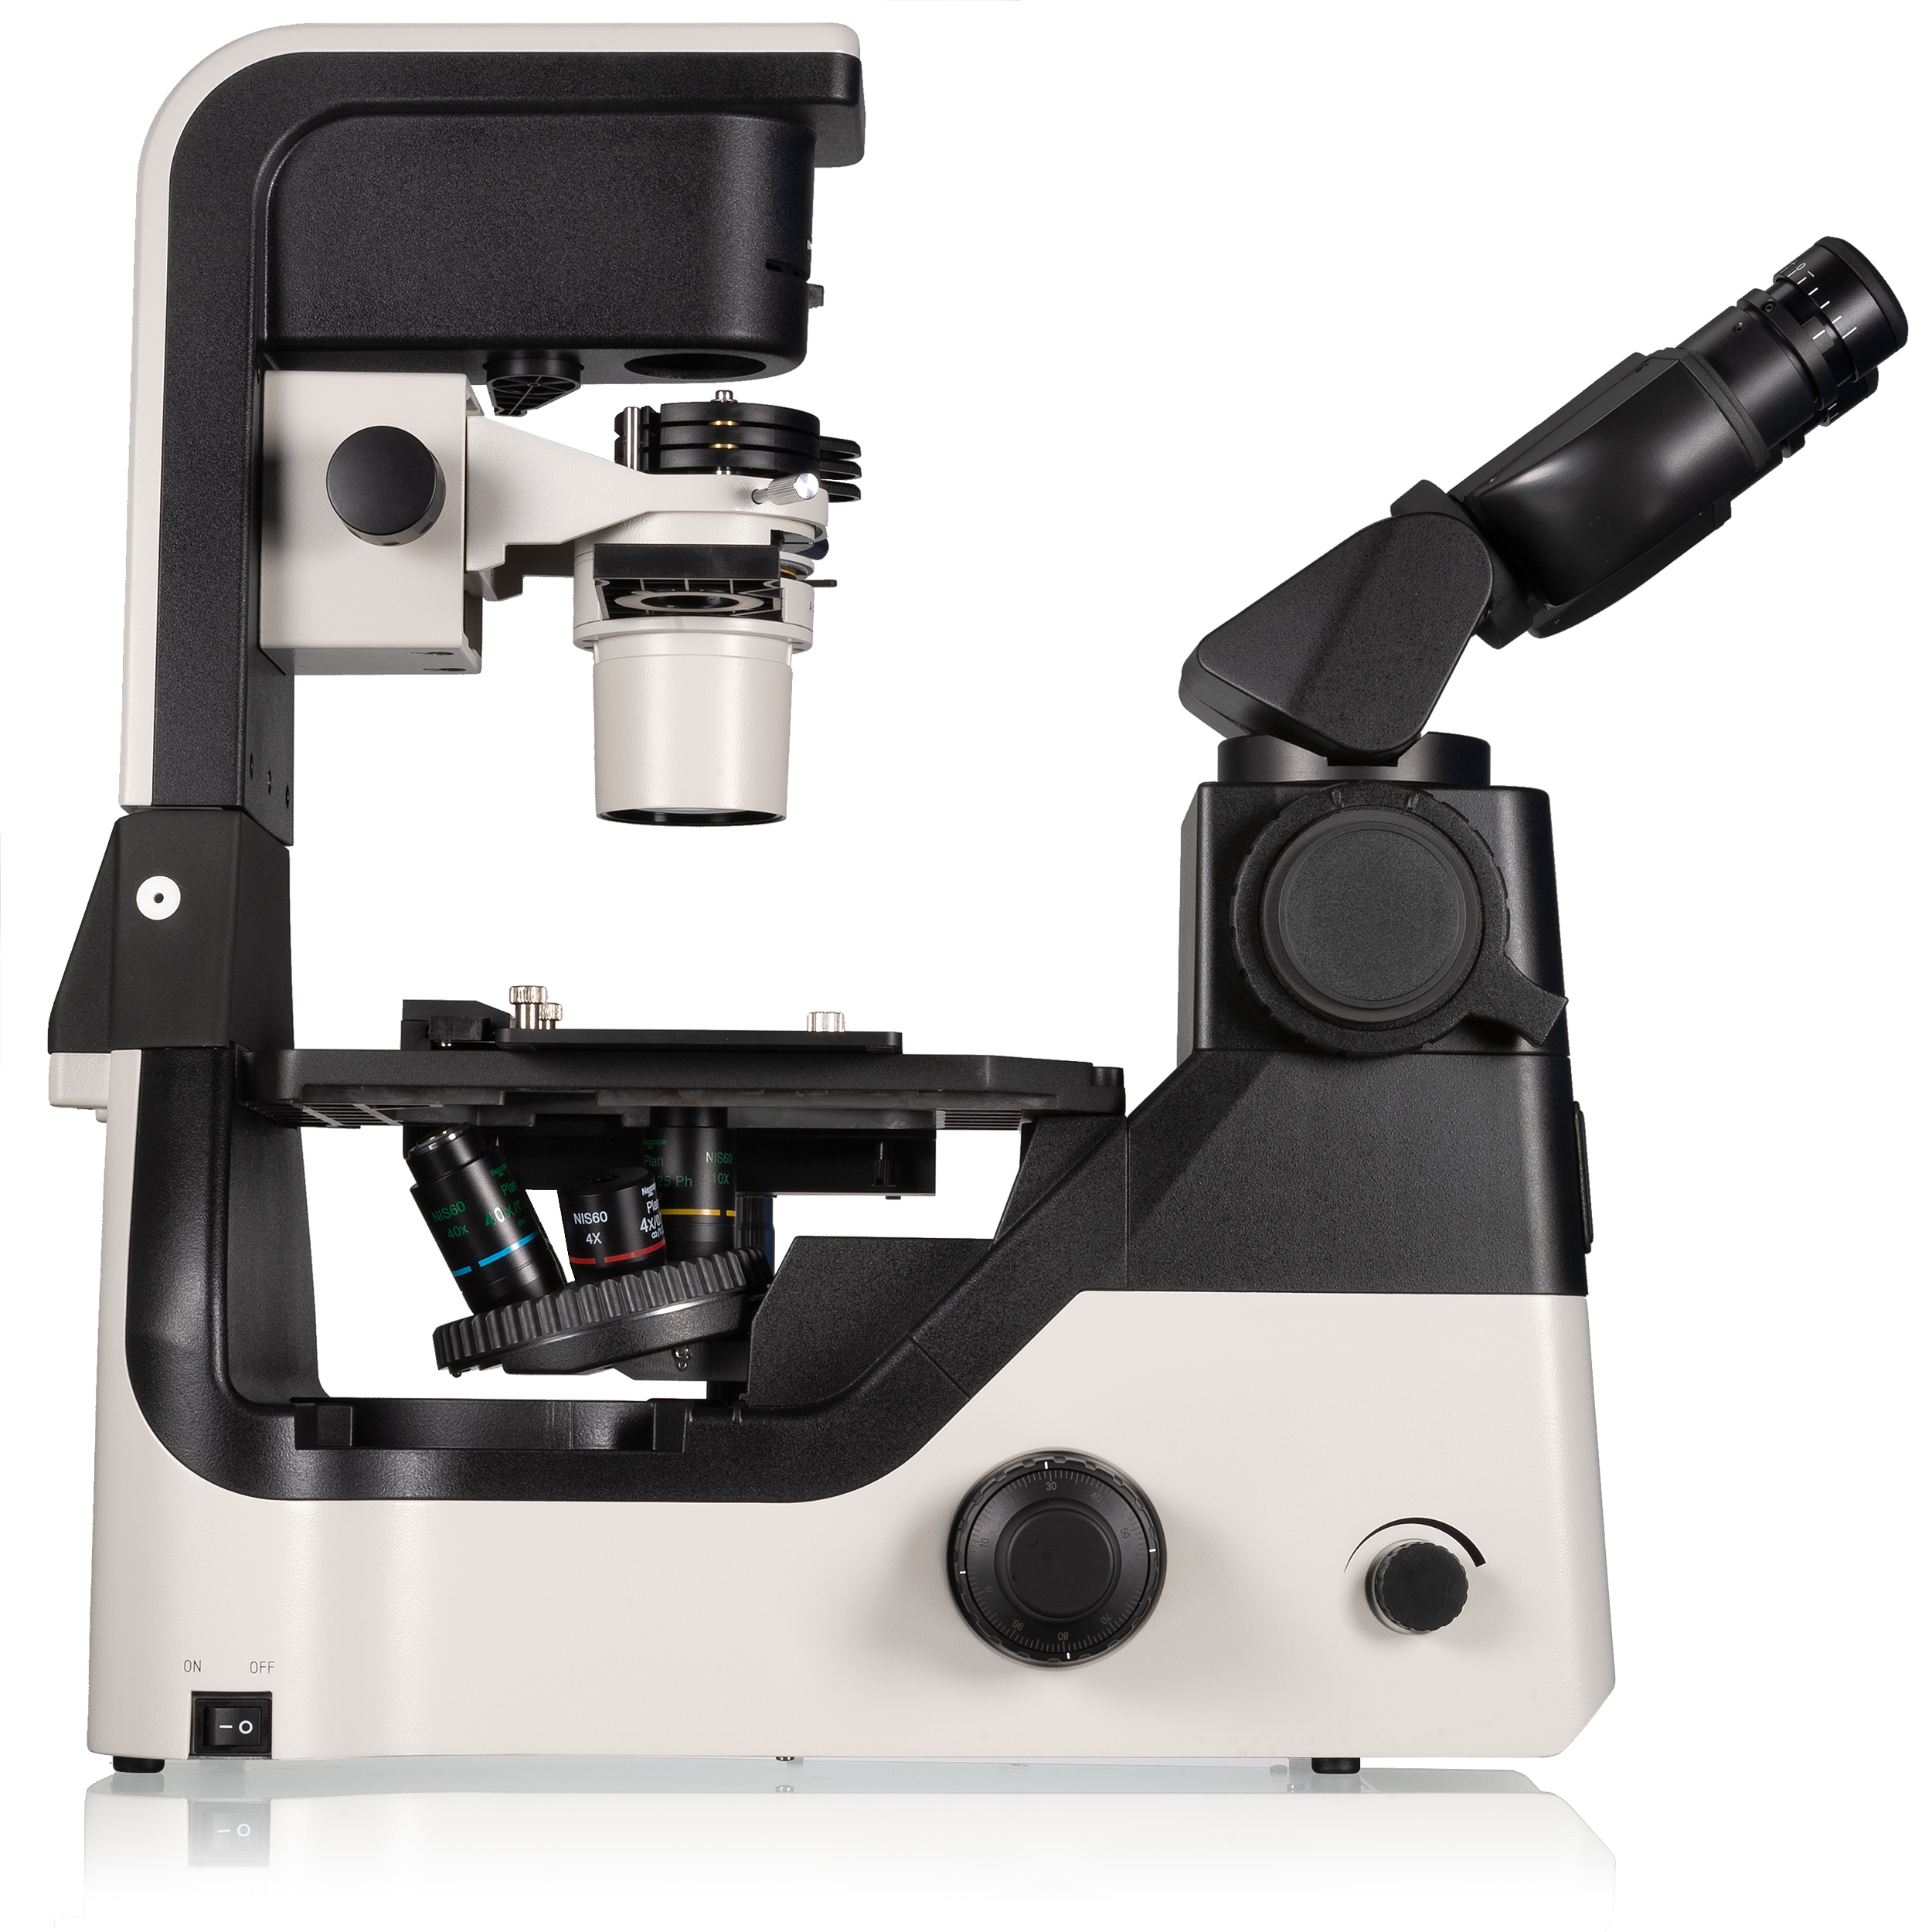 Microscope de laboratoire inversé avec unité d’éclairage inclinable Nexcope NIB630